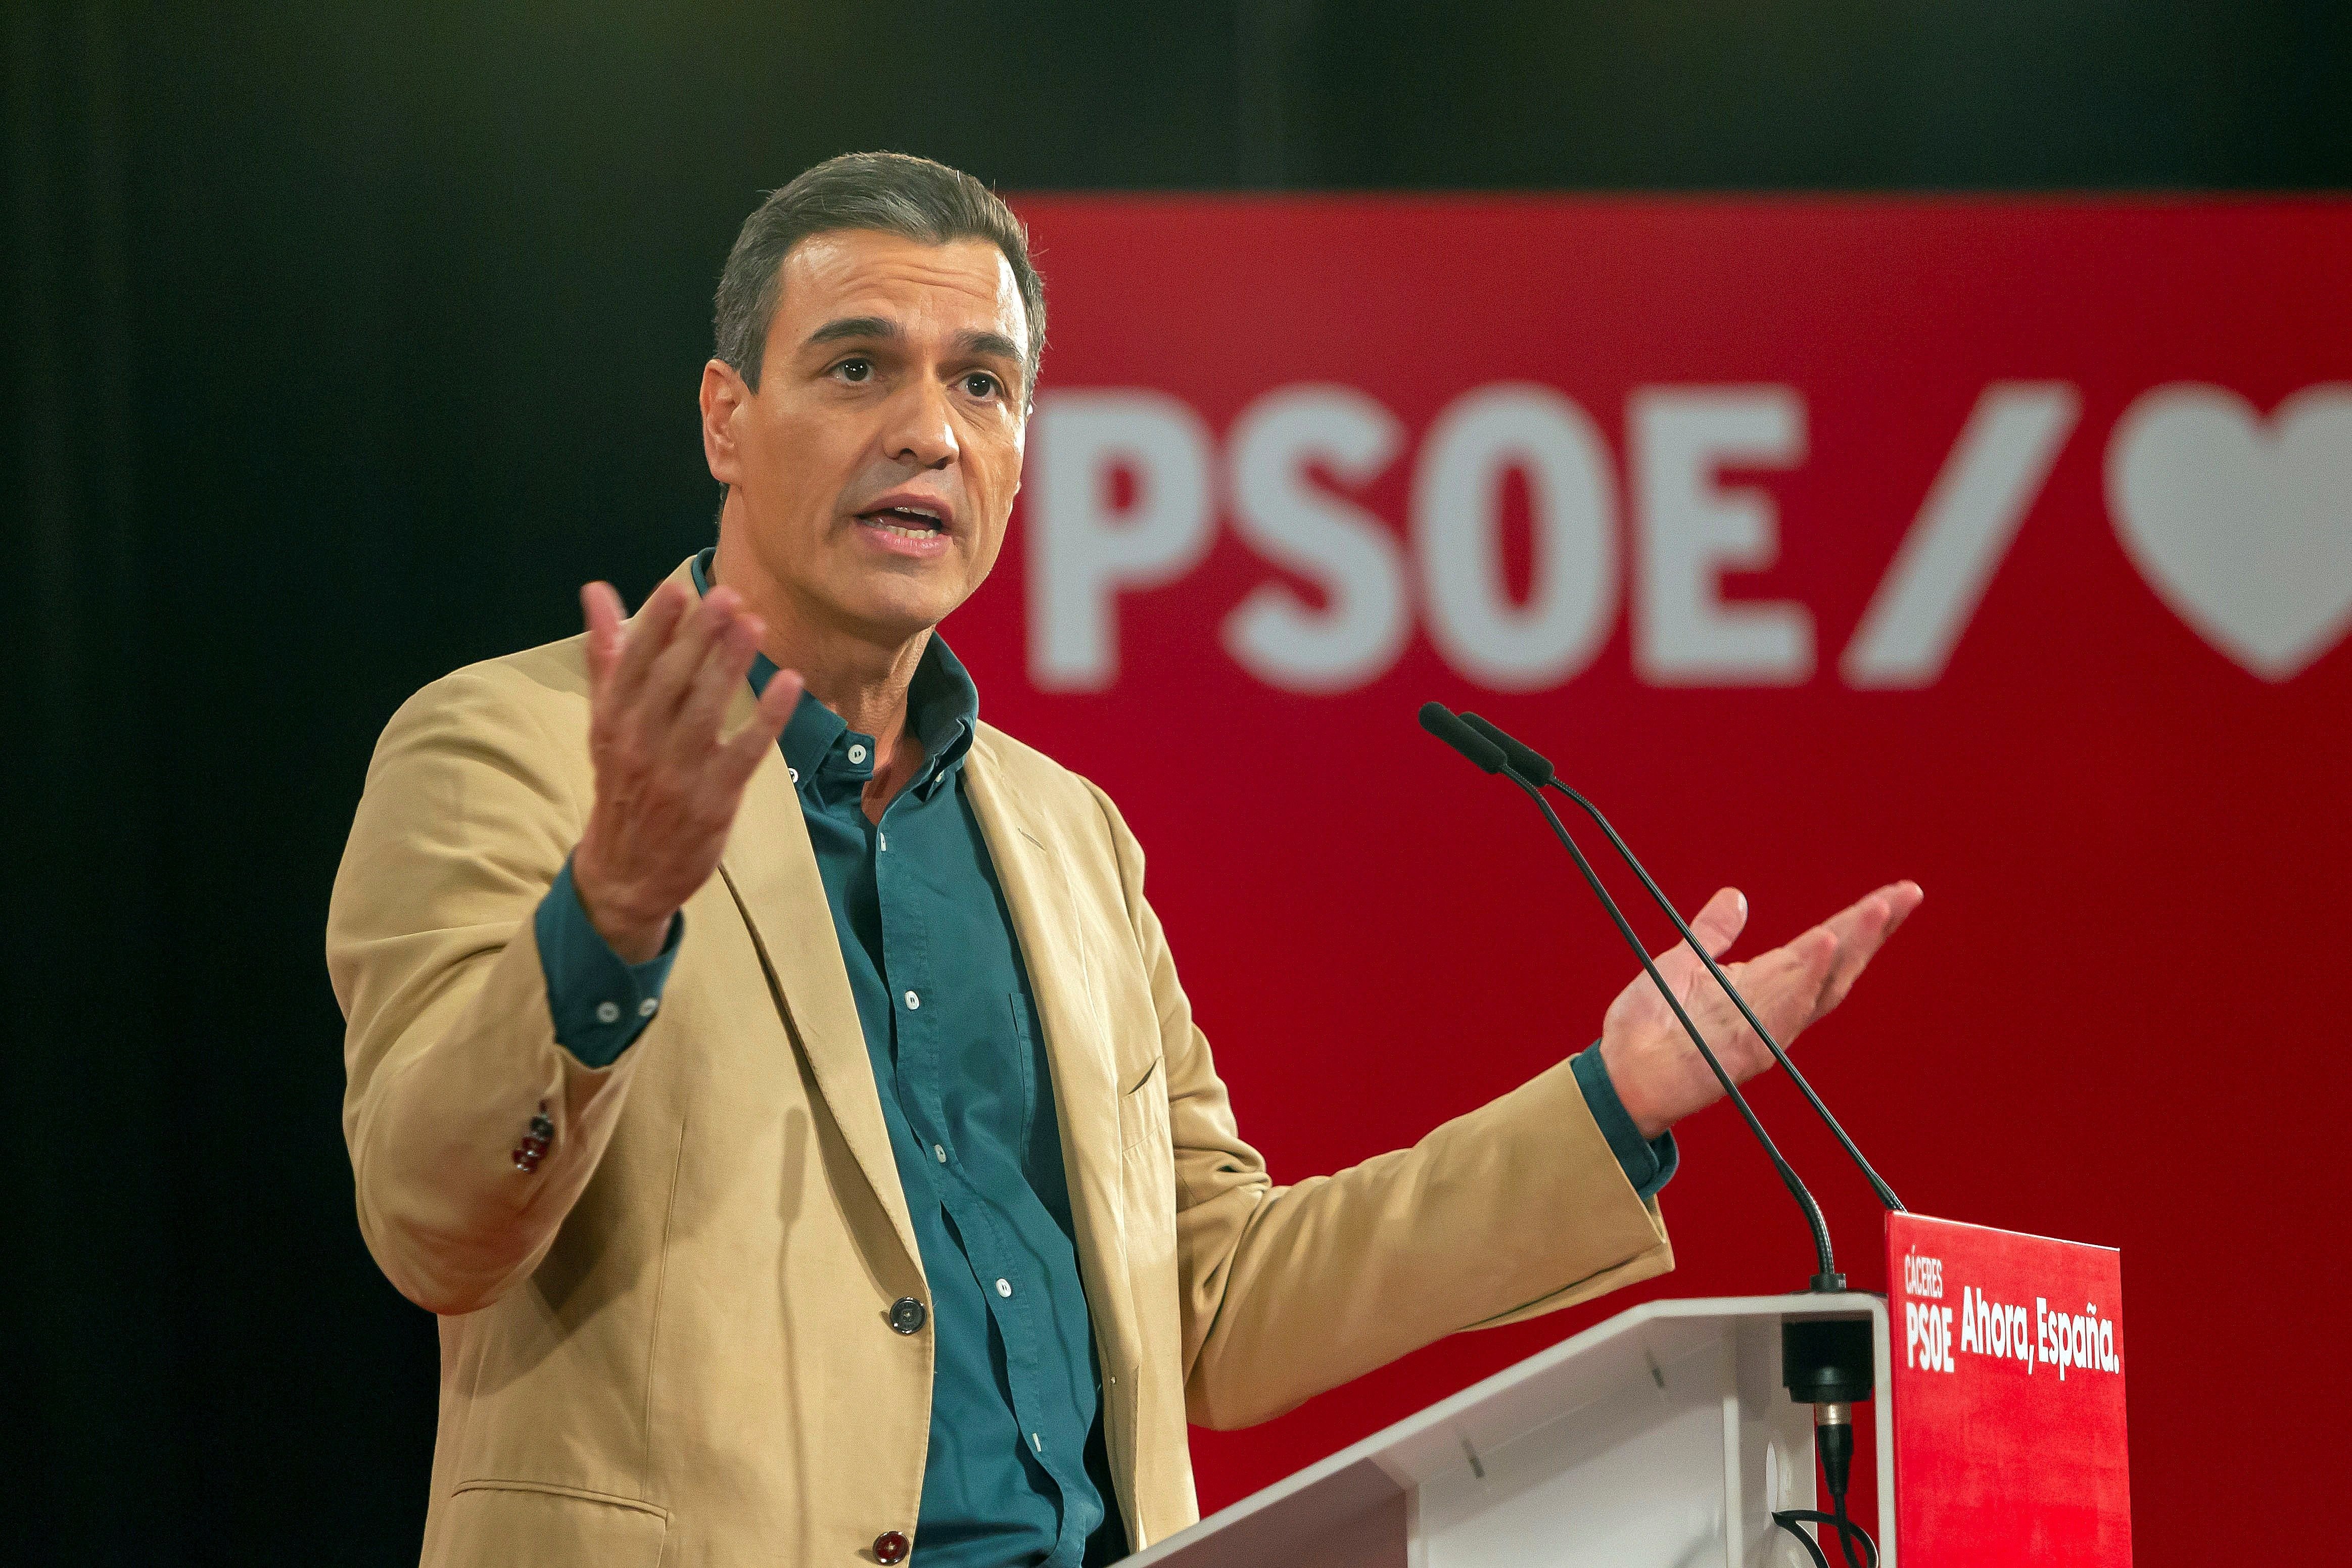 Creus que l'independentisme ha fracassat com diu Pedro Sánchez?